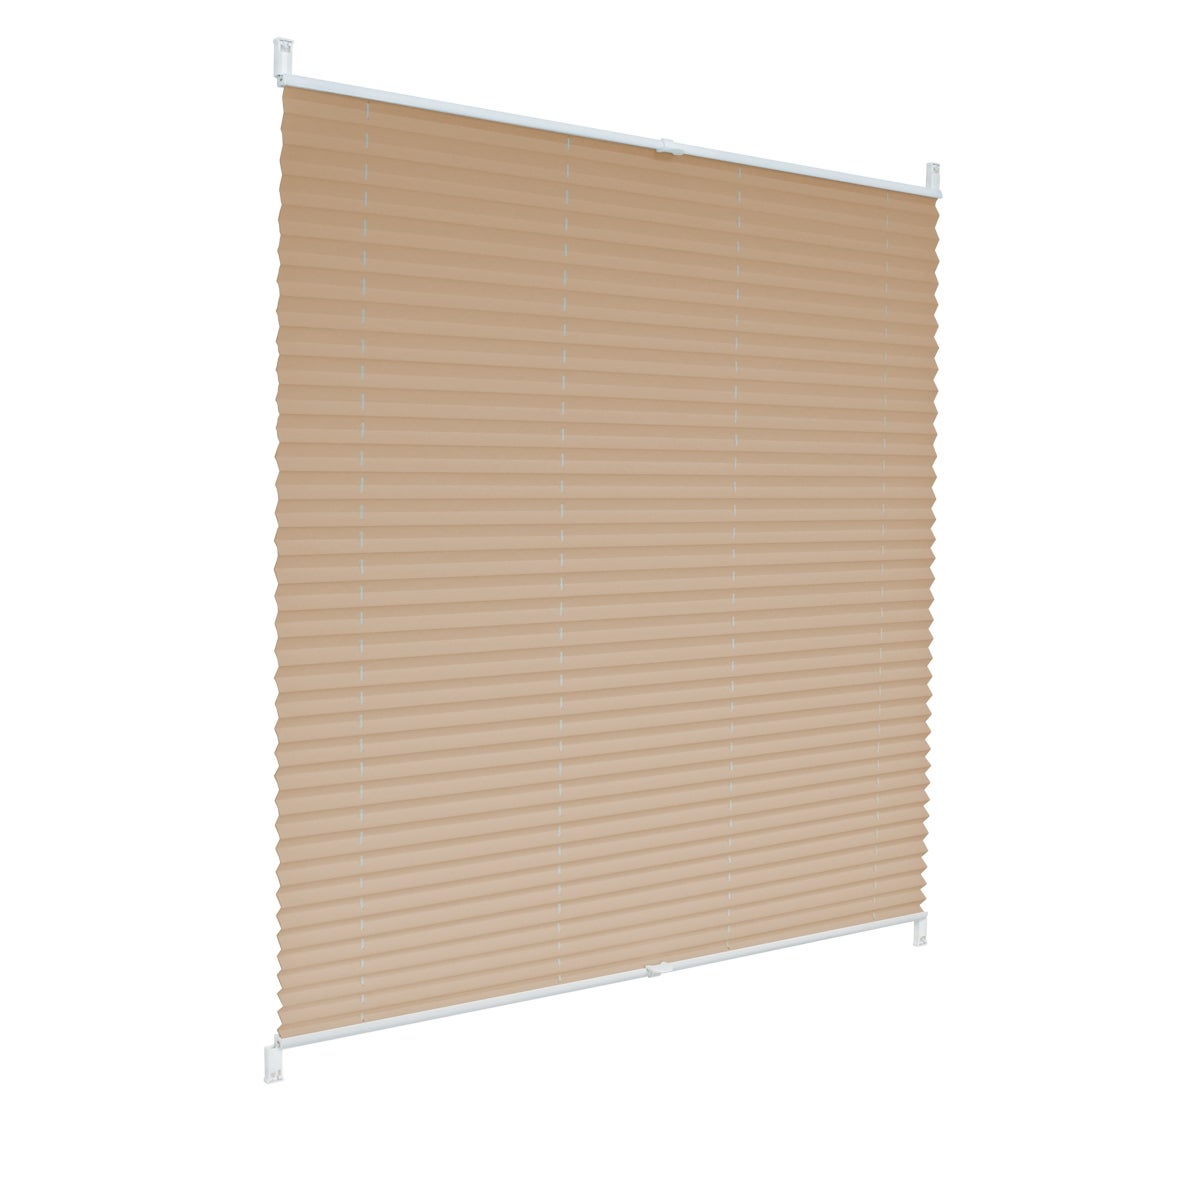 Ecd germany cortina plisada 80 x 150cm klemmfix - easyfix no necesita ninguna perforación protección solar para ventanas color crema + accesorios de m